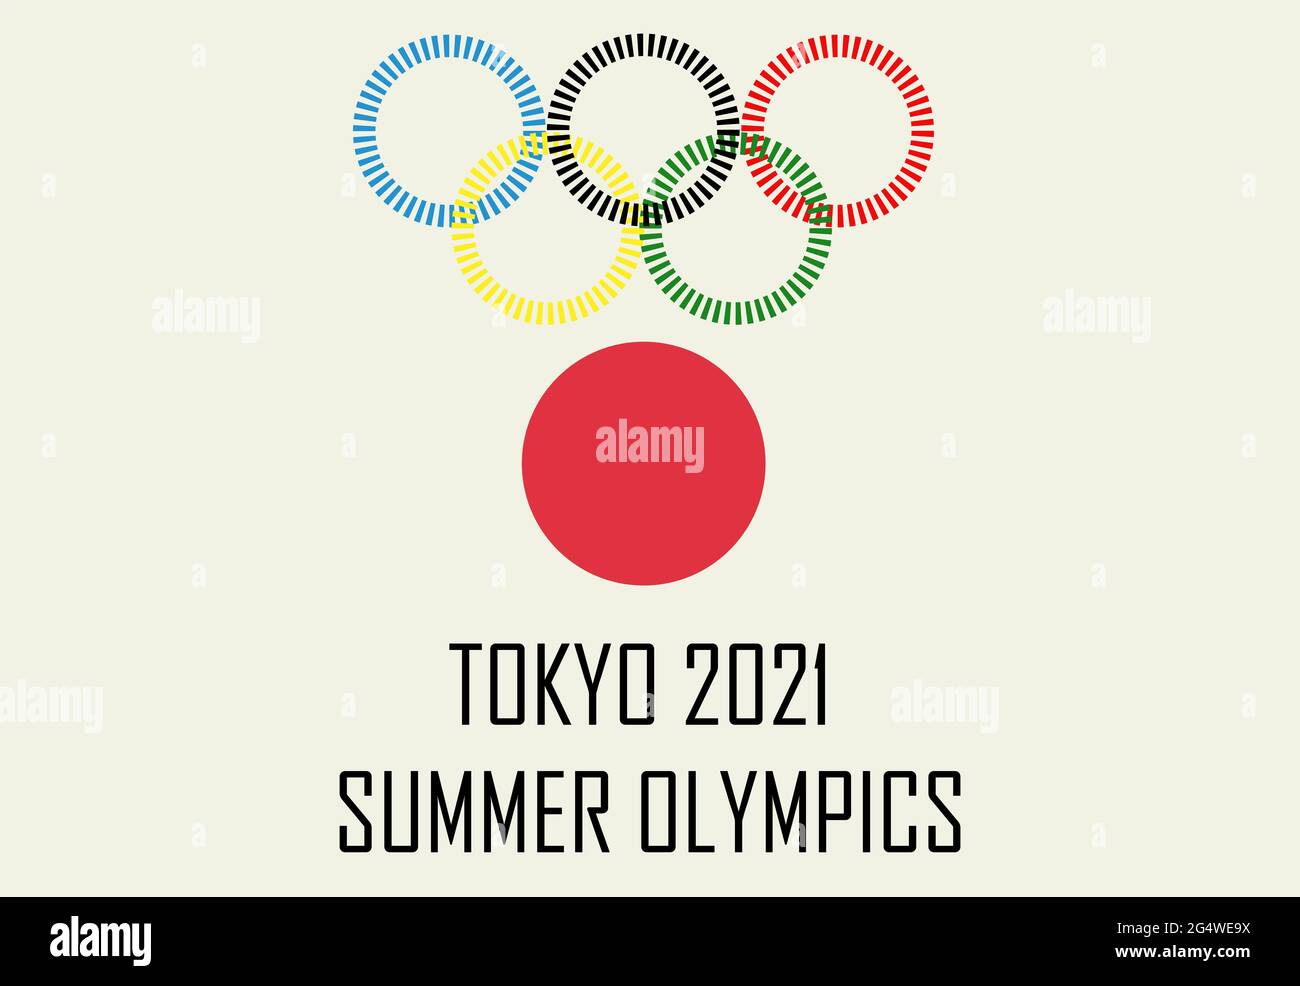 Olympische Spiele 2021. Hintergrundbilder für die Olympischen Spiele 2021 in Tokio. Japan-Flagge. Olympische Sommerspiele XXXII 2021. Tokio, Japan Stockfoto